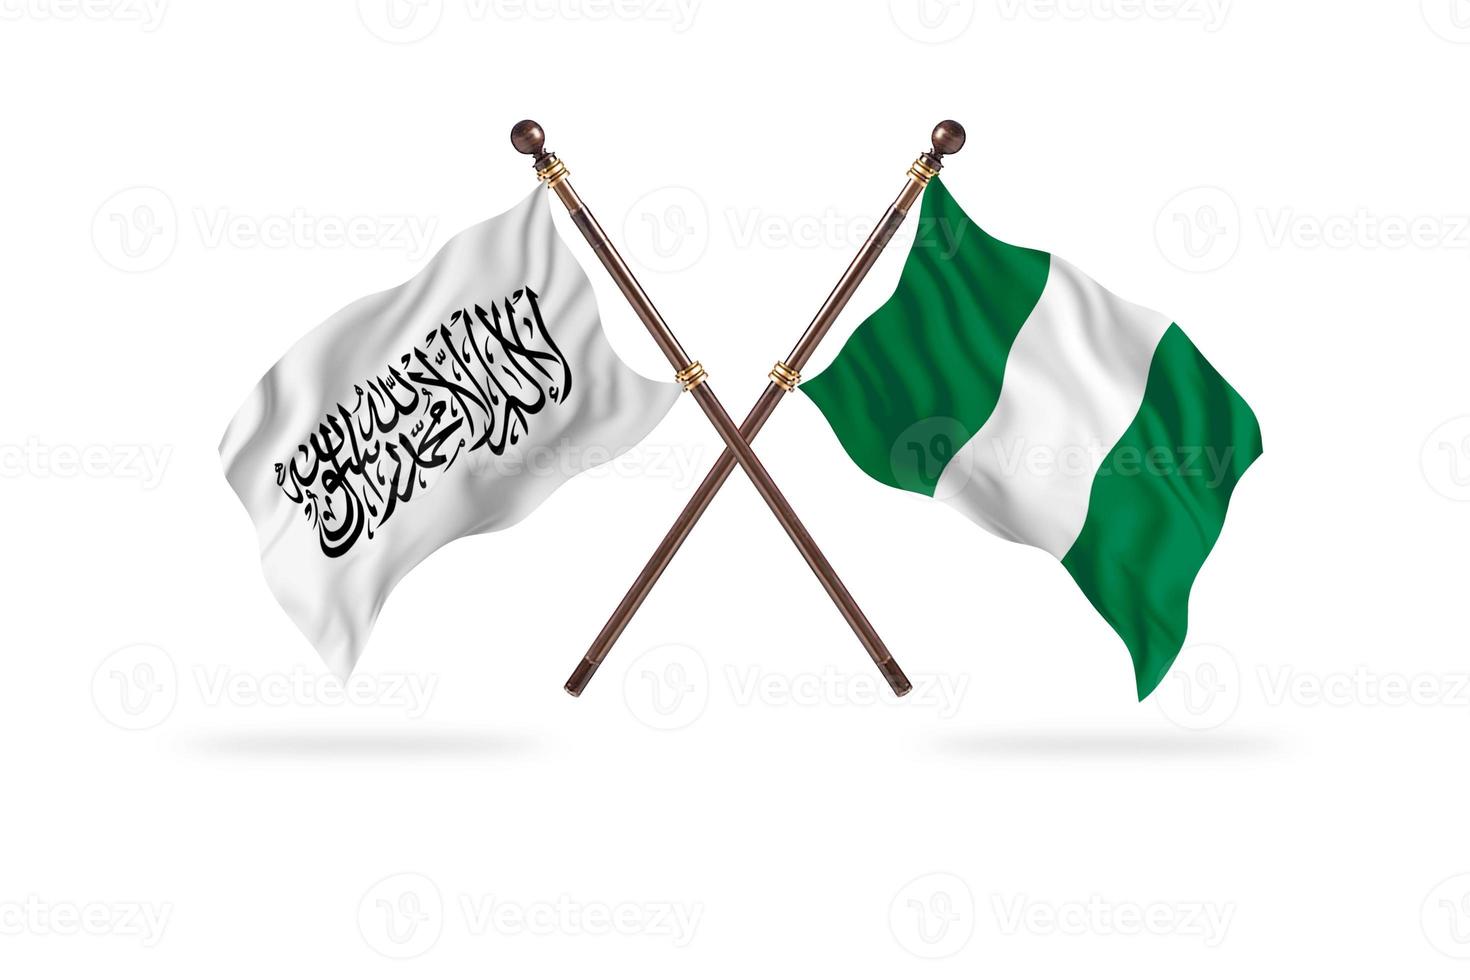 emirado islâmico do afeganistão contra nigéria dois países bandeiras foto